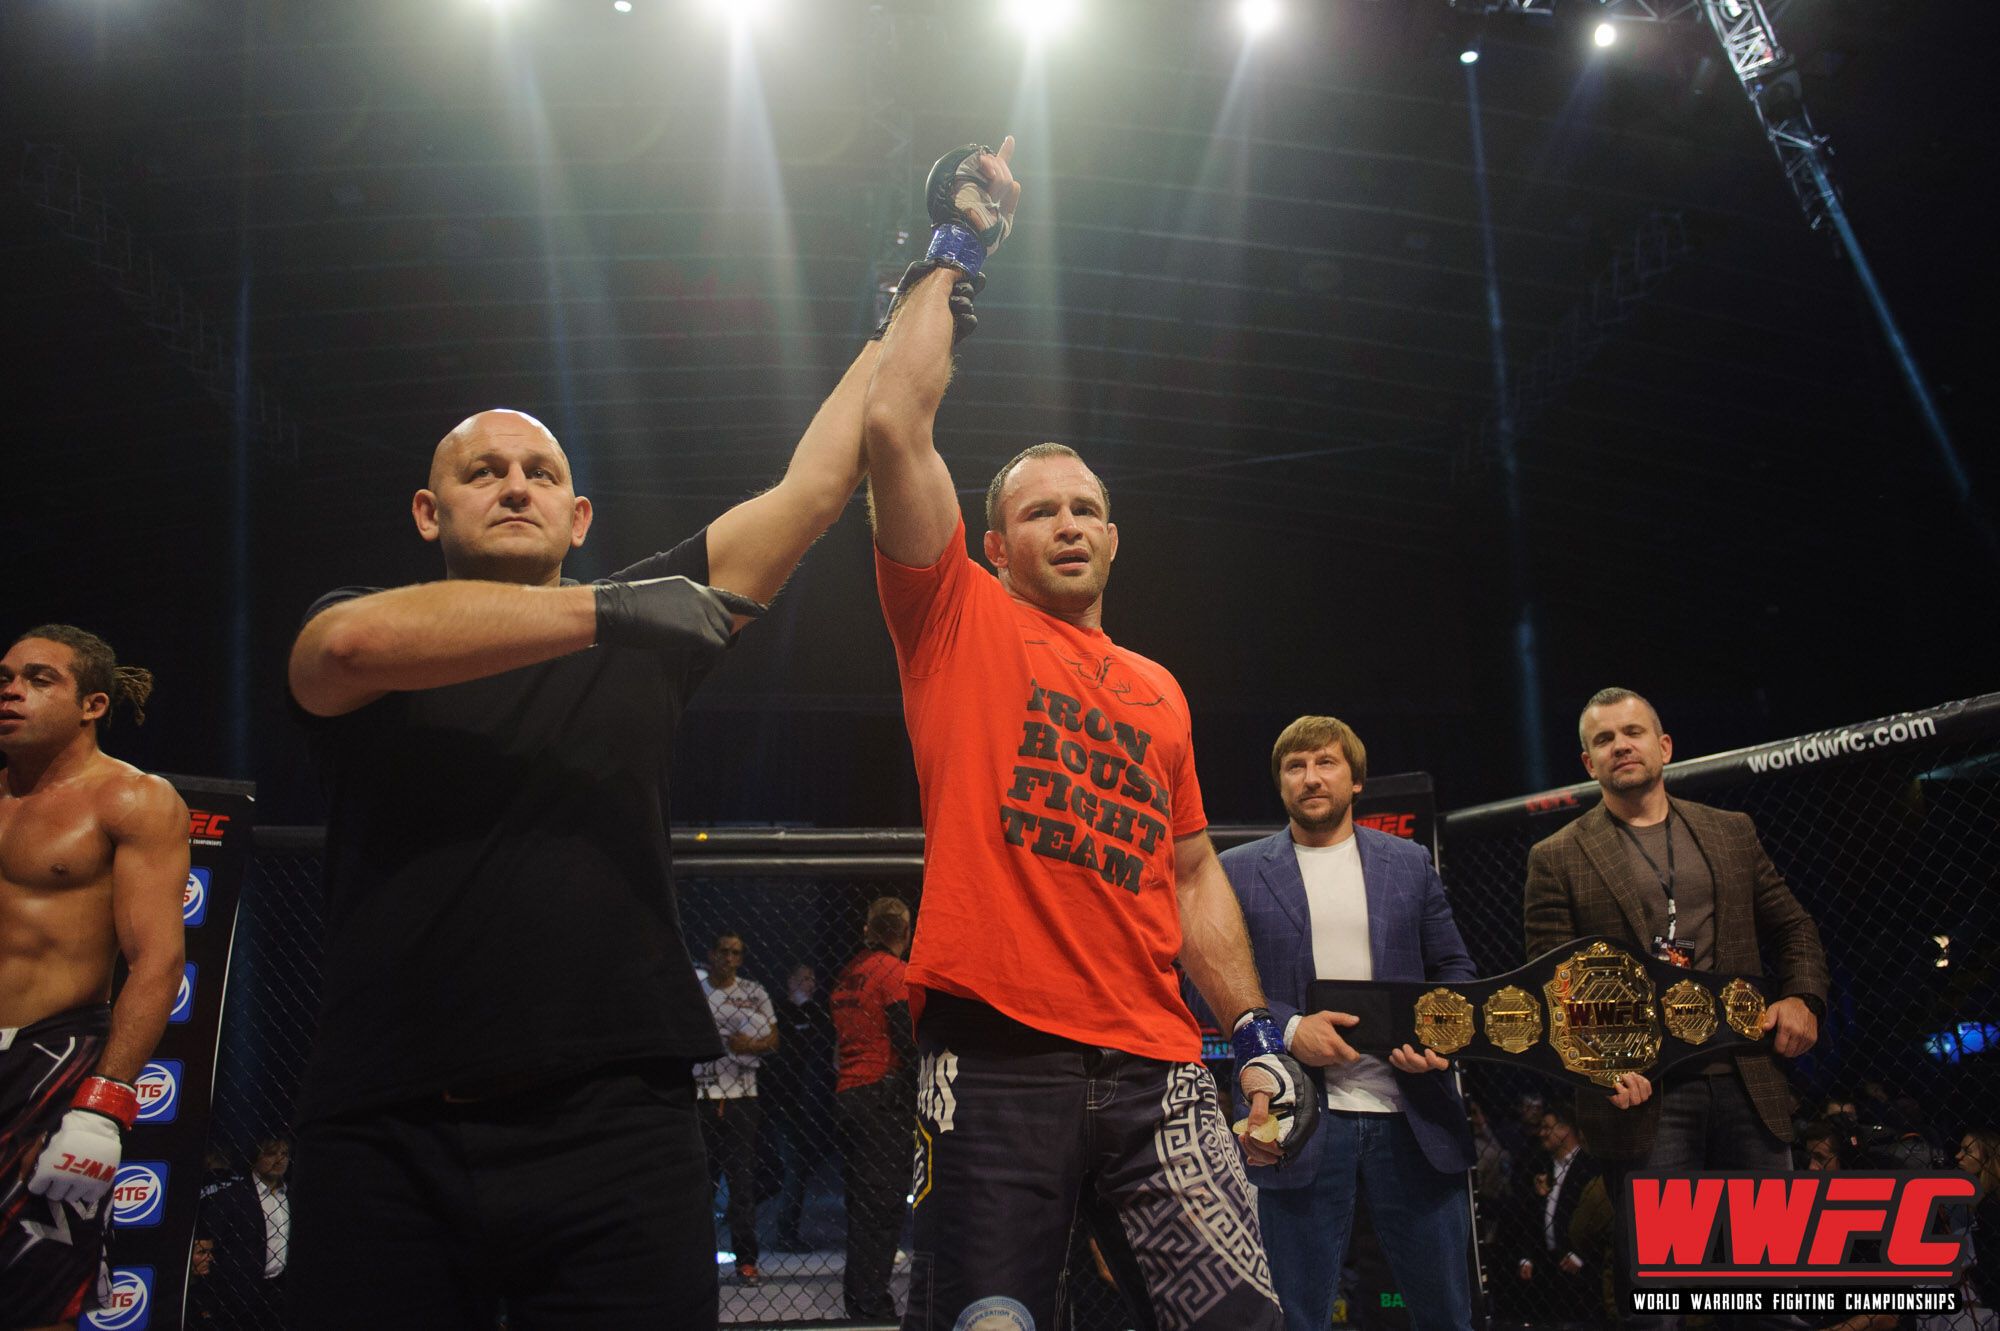 Чемпион мира по версии WWFC Сергей Гузев: "Идём на взлёт!"